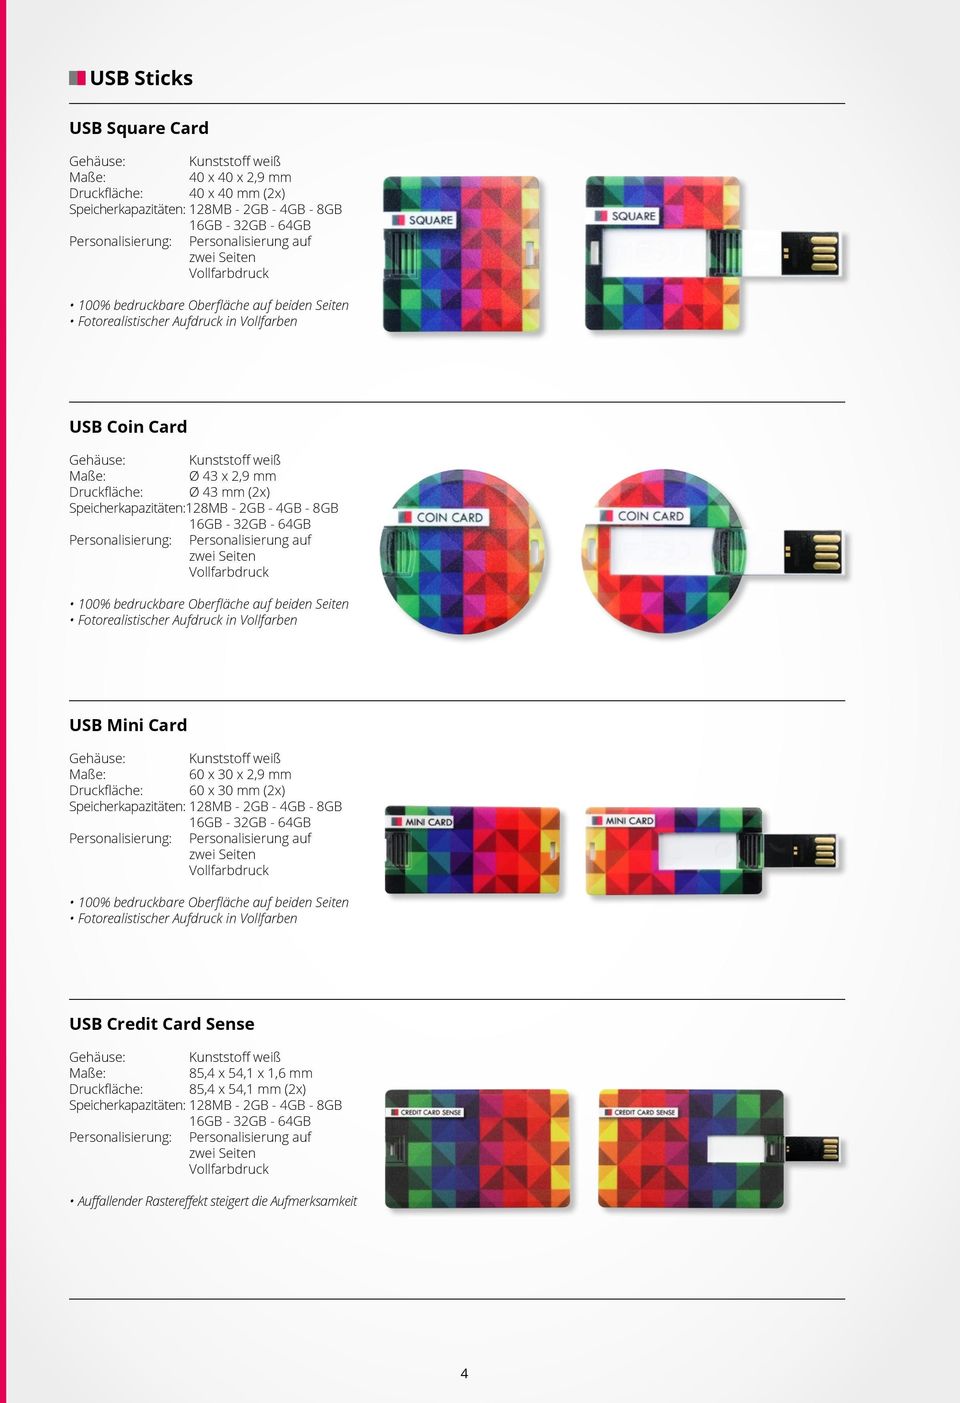 Aufdruck in Vollfarben USB Mini Card Gehäuse: Kunststoff weiß 60 x 30 x 2,9 mm 60 x 30 mm (2x) Speicherkapazitäten: 128MB - 2GB - 4GB - 8GB 100% bedruckbare Oberfläche auf beiden Seiten